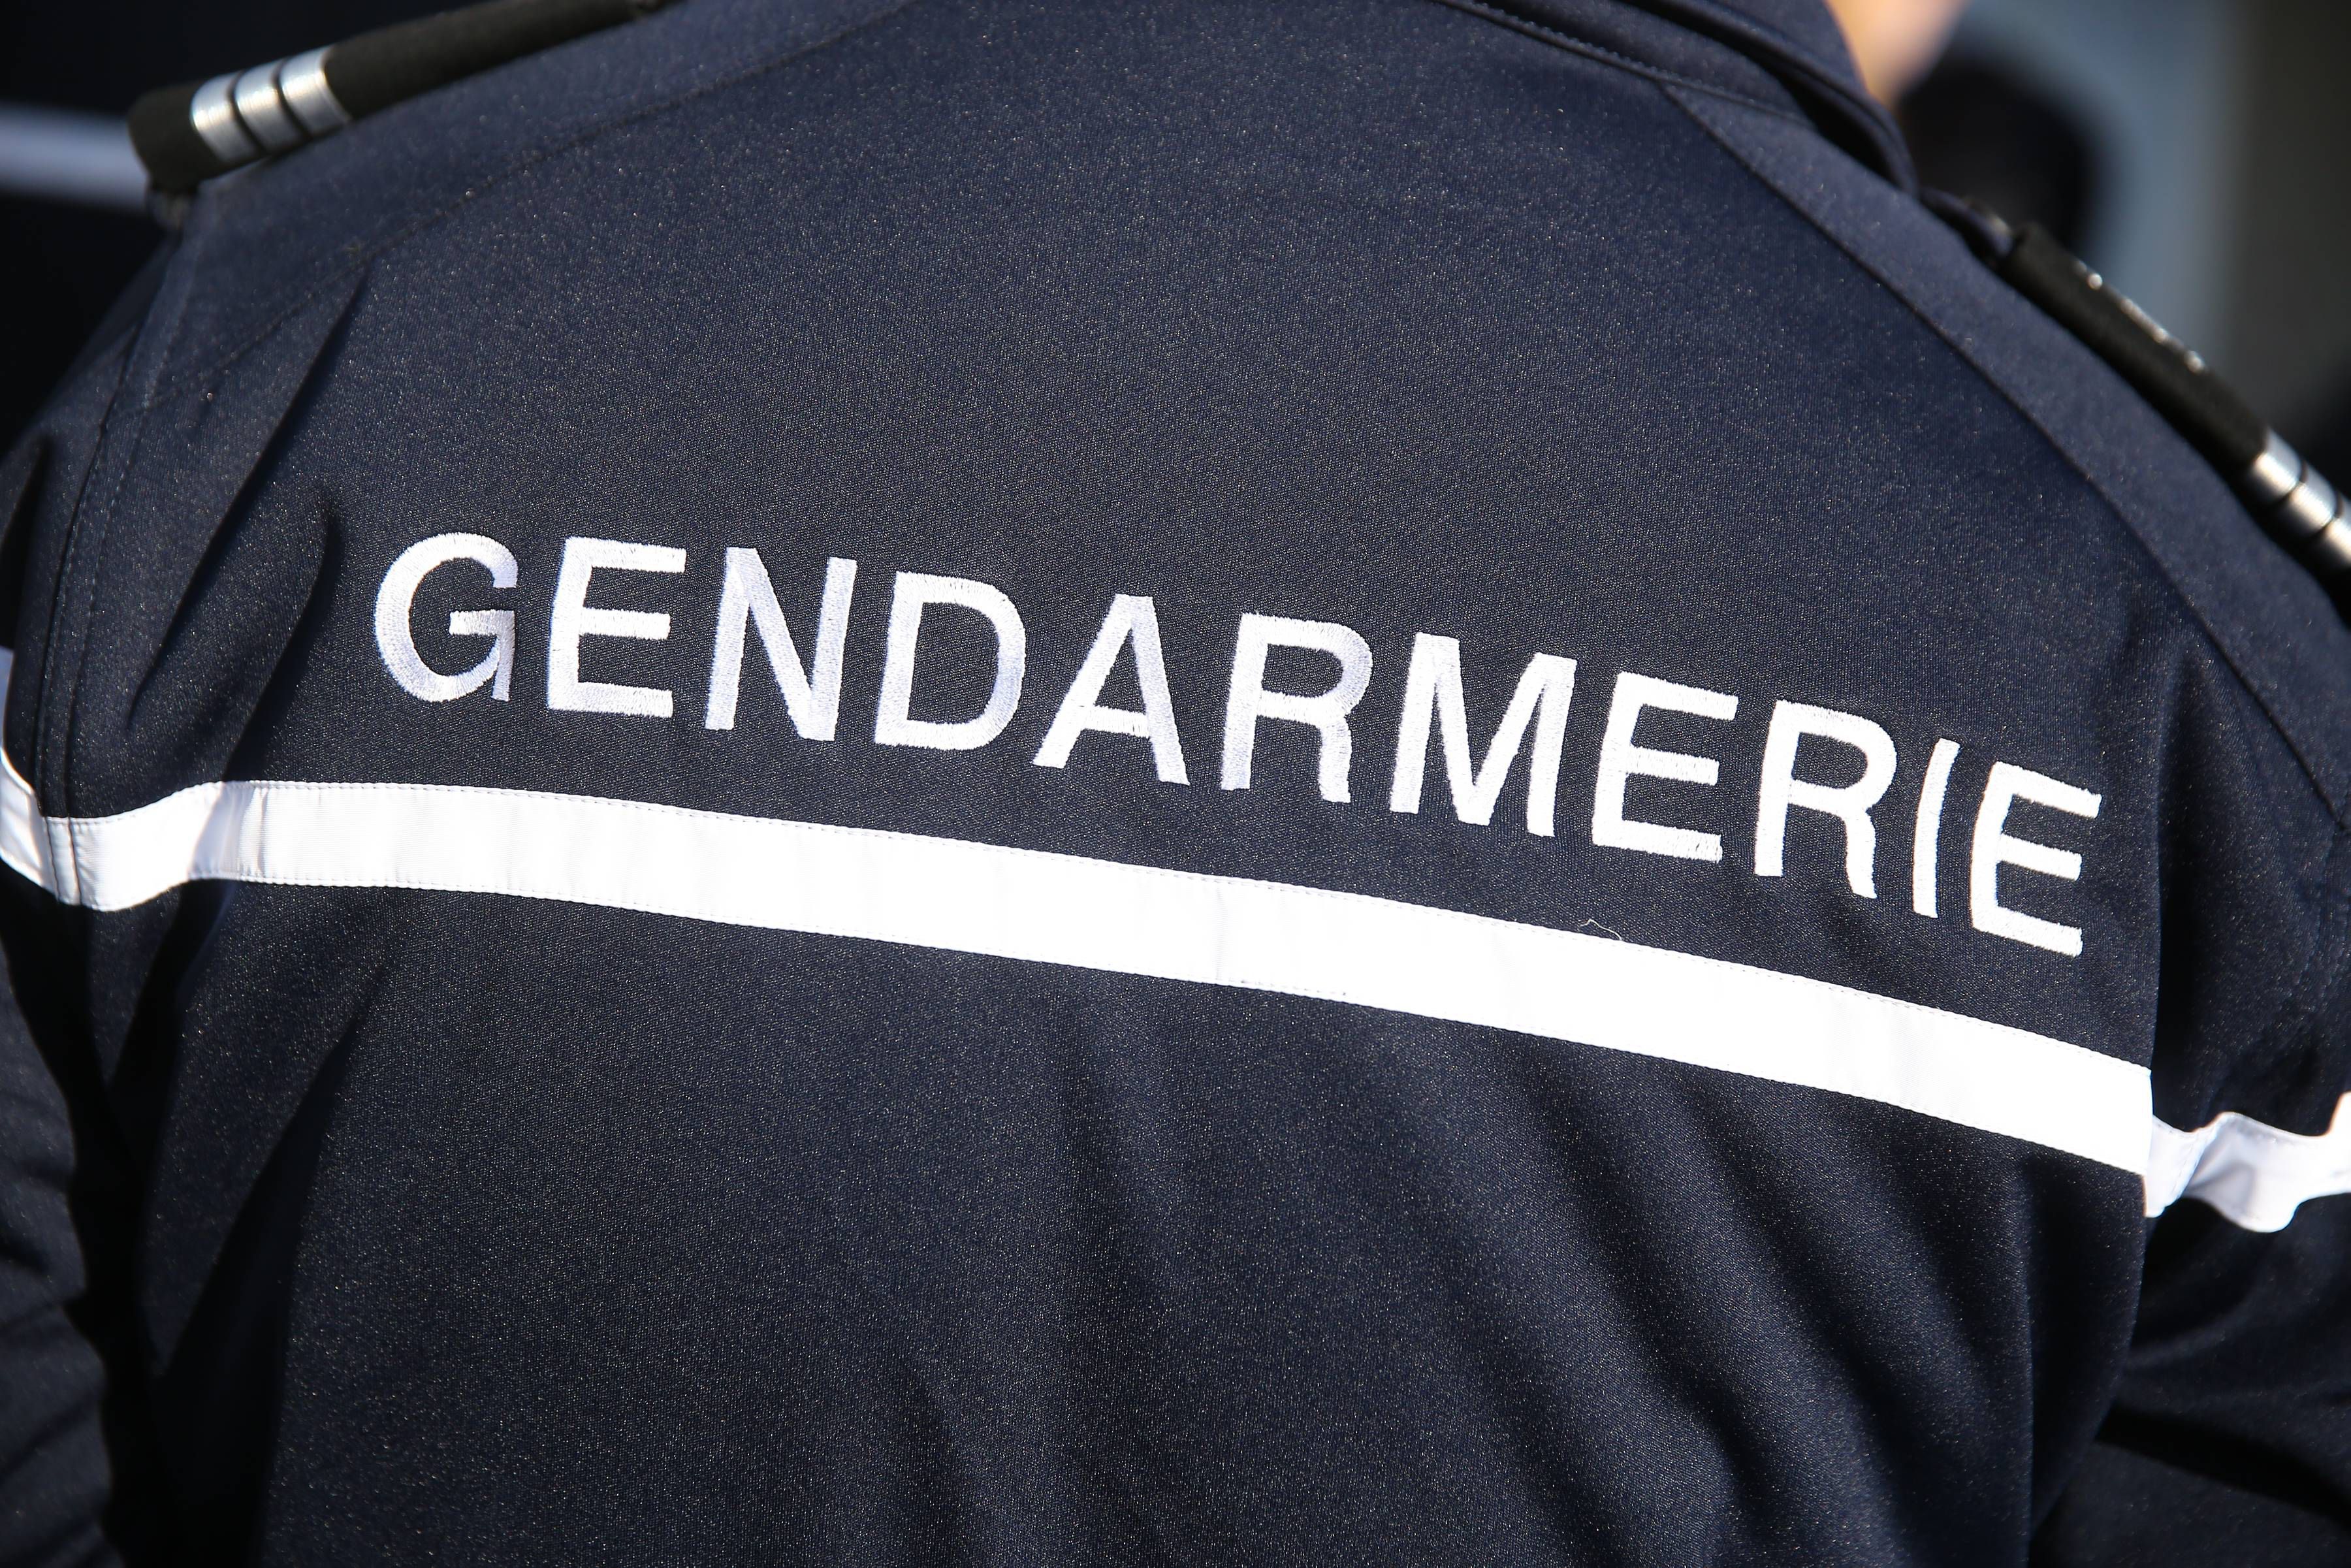 Le tueur présumé a lui-même fait appeler la gendarmerie. (illustration) LP/Arnaud Journois